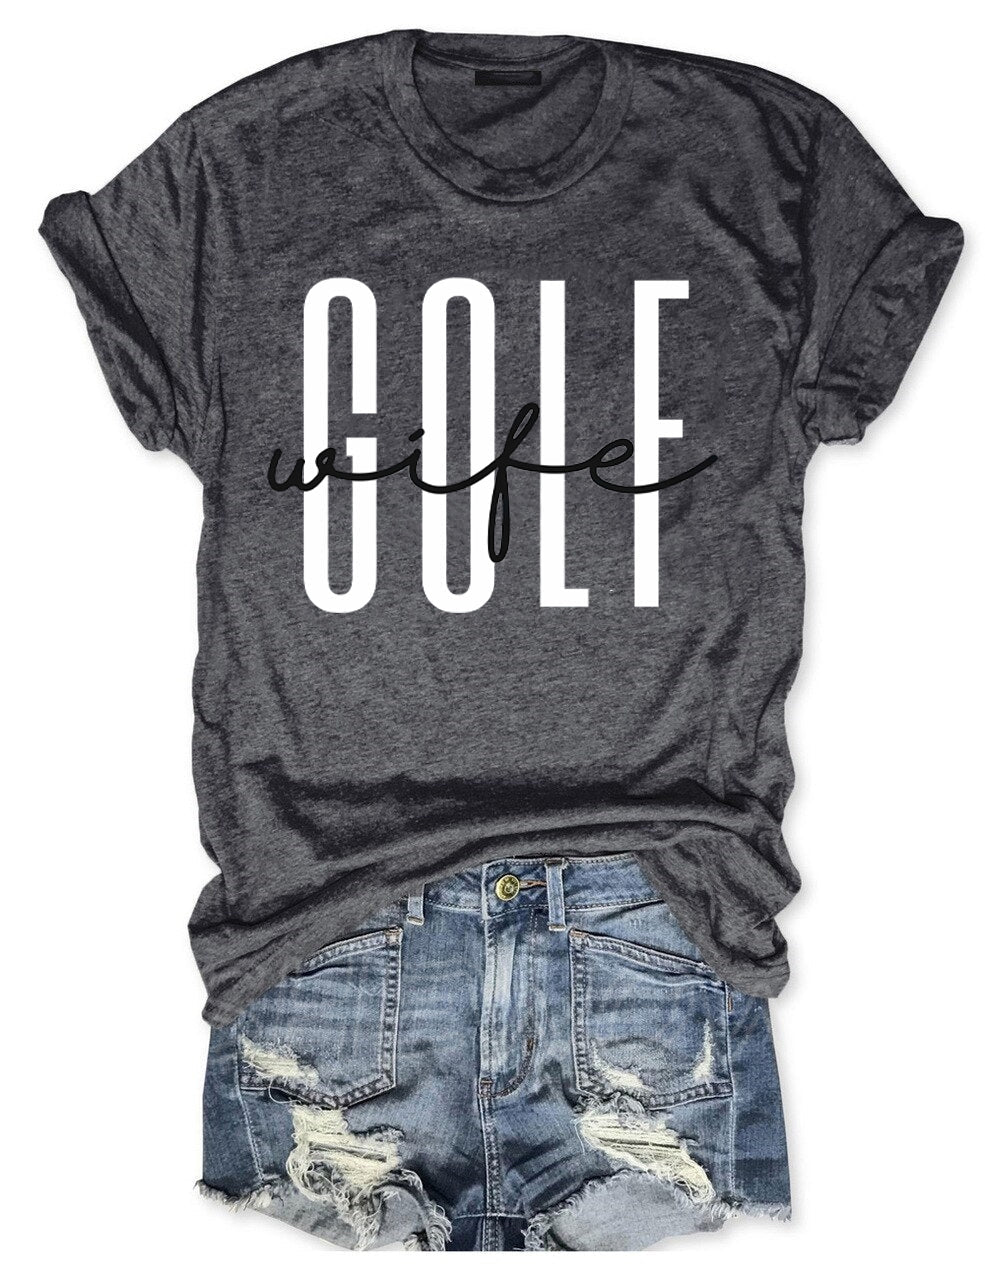 Golf Wife T-shirt